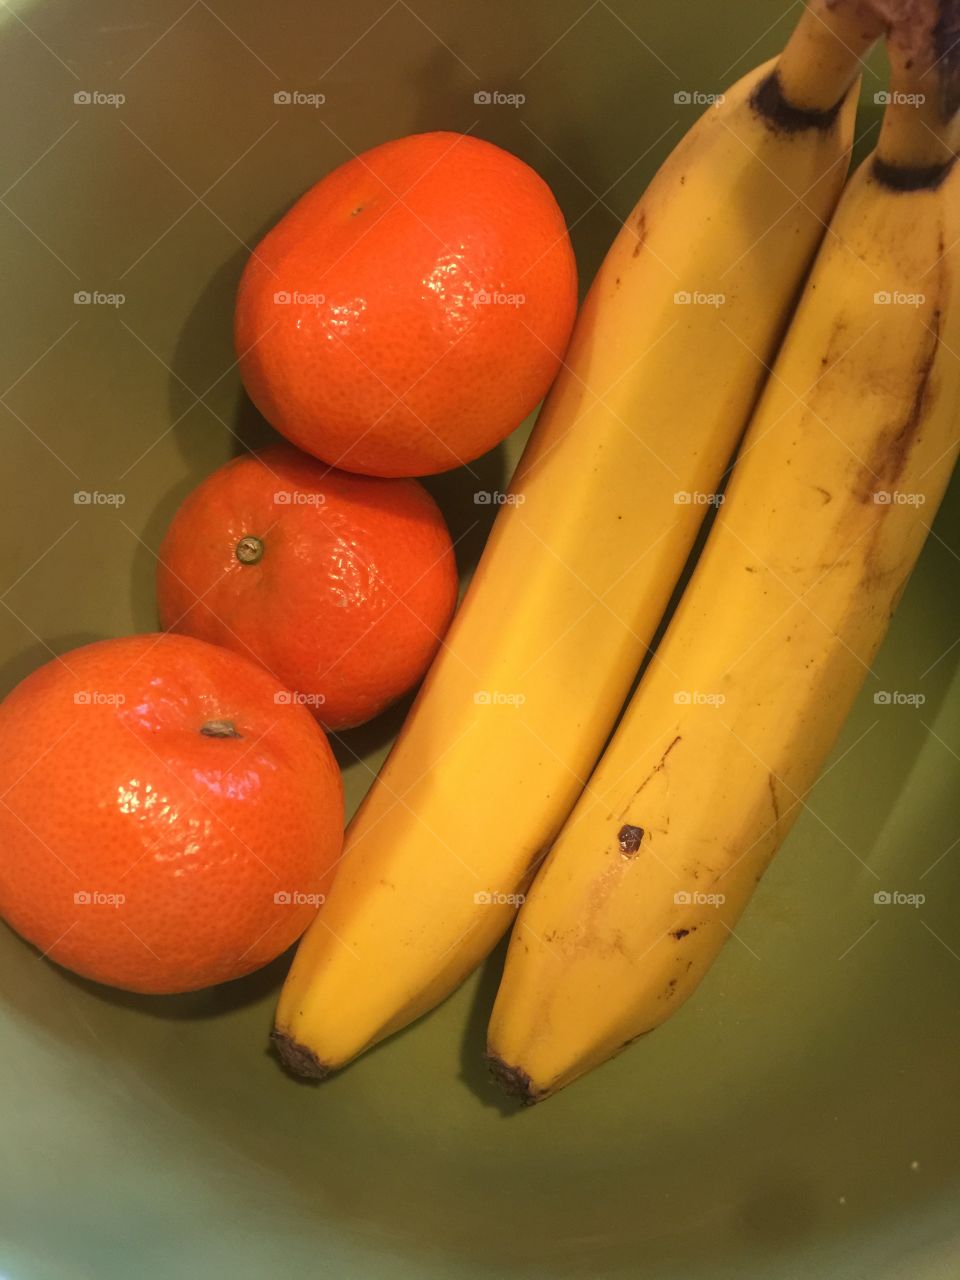 Fruit bananas oranges